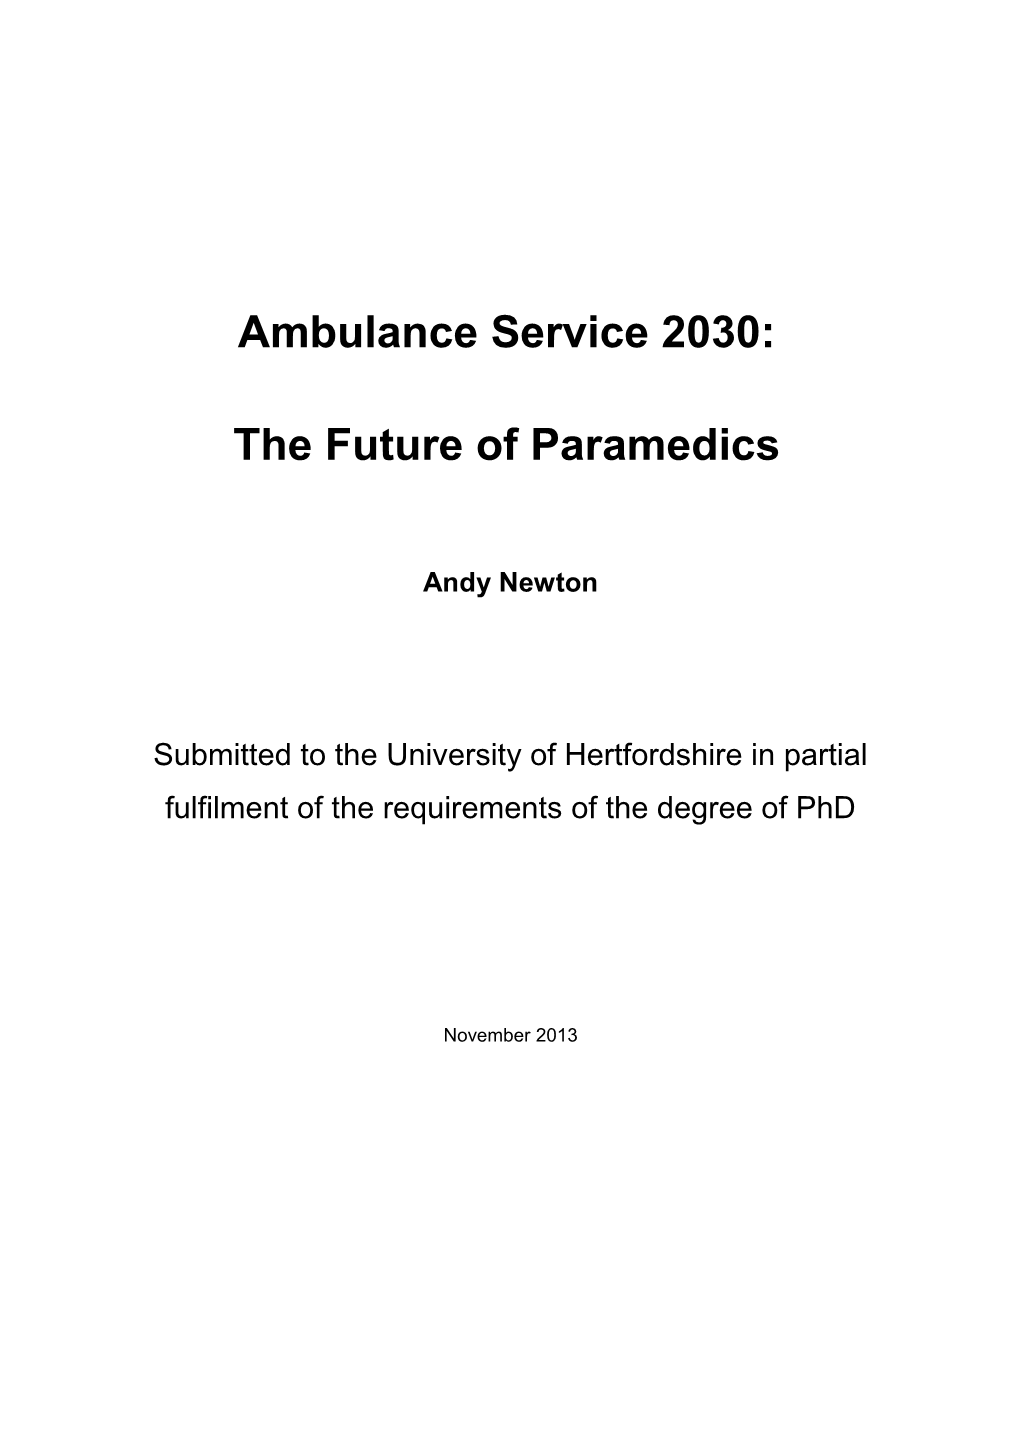 Ambulance Service 2020